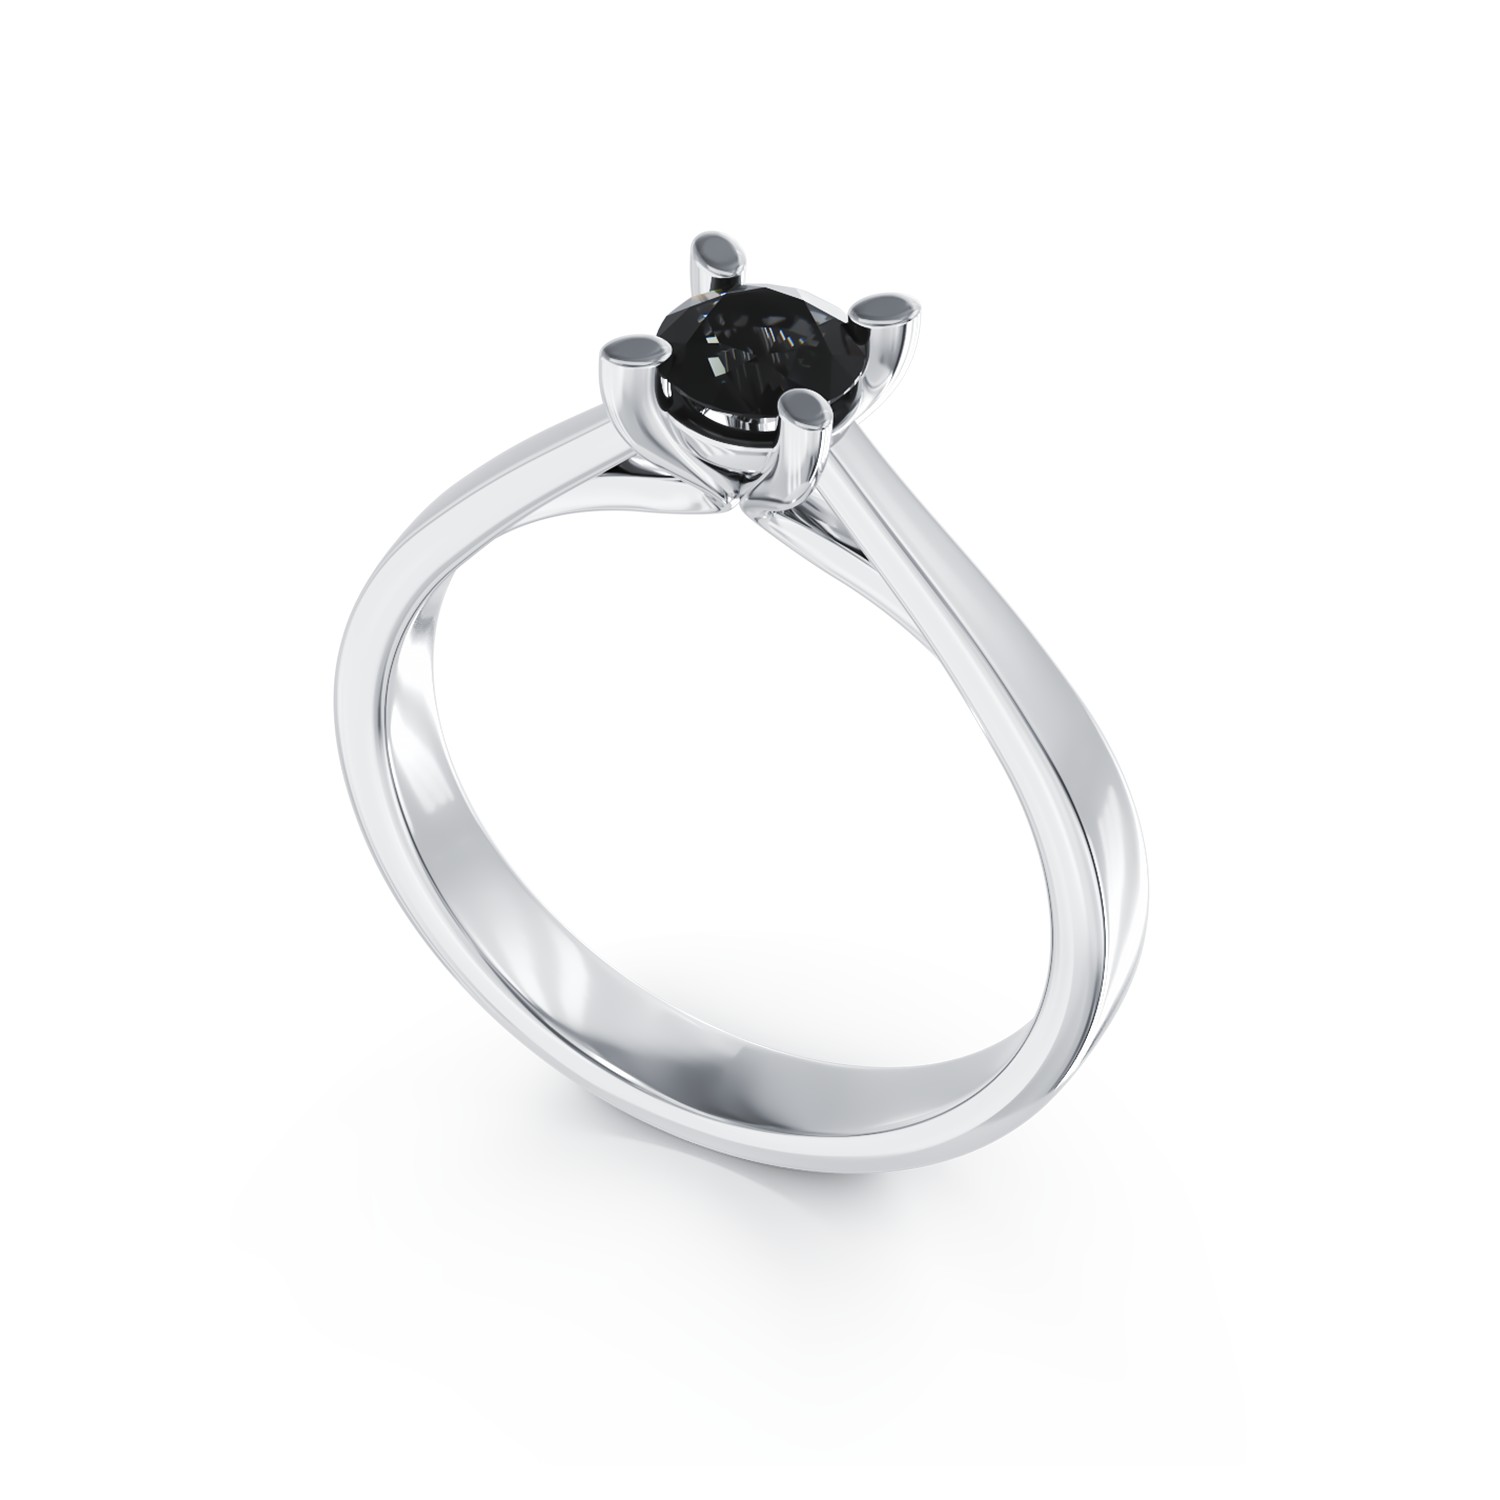 Eljegyzési gyűrű 18K-os fehér aranyból 0,4ct fekete gyémánttal. Gramm: 2,4